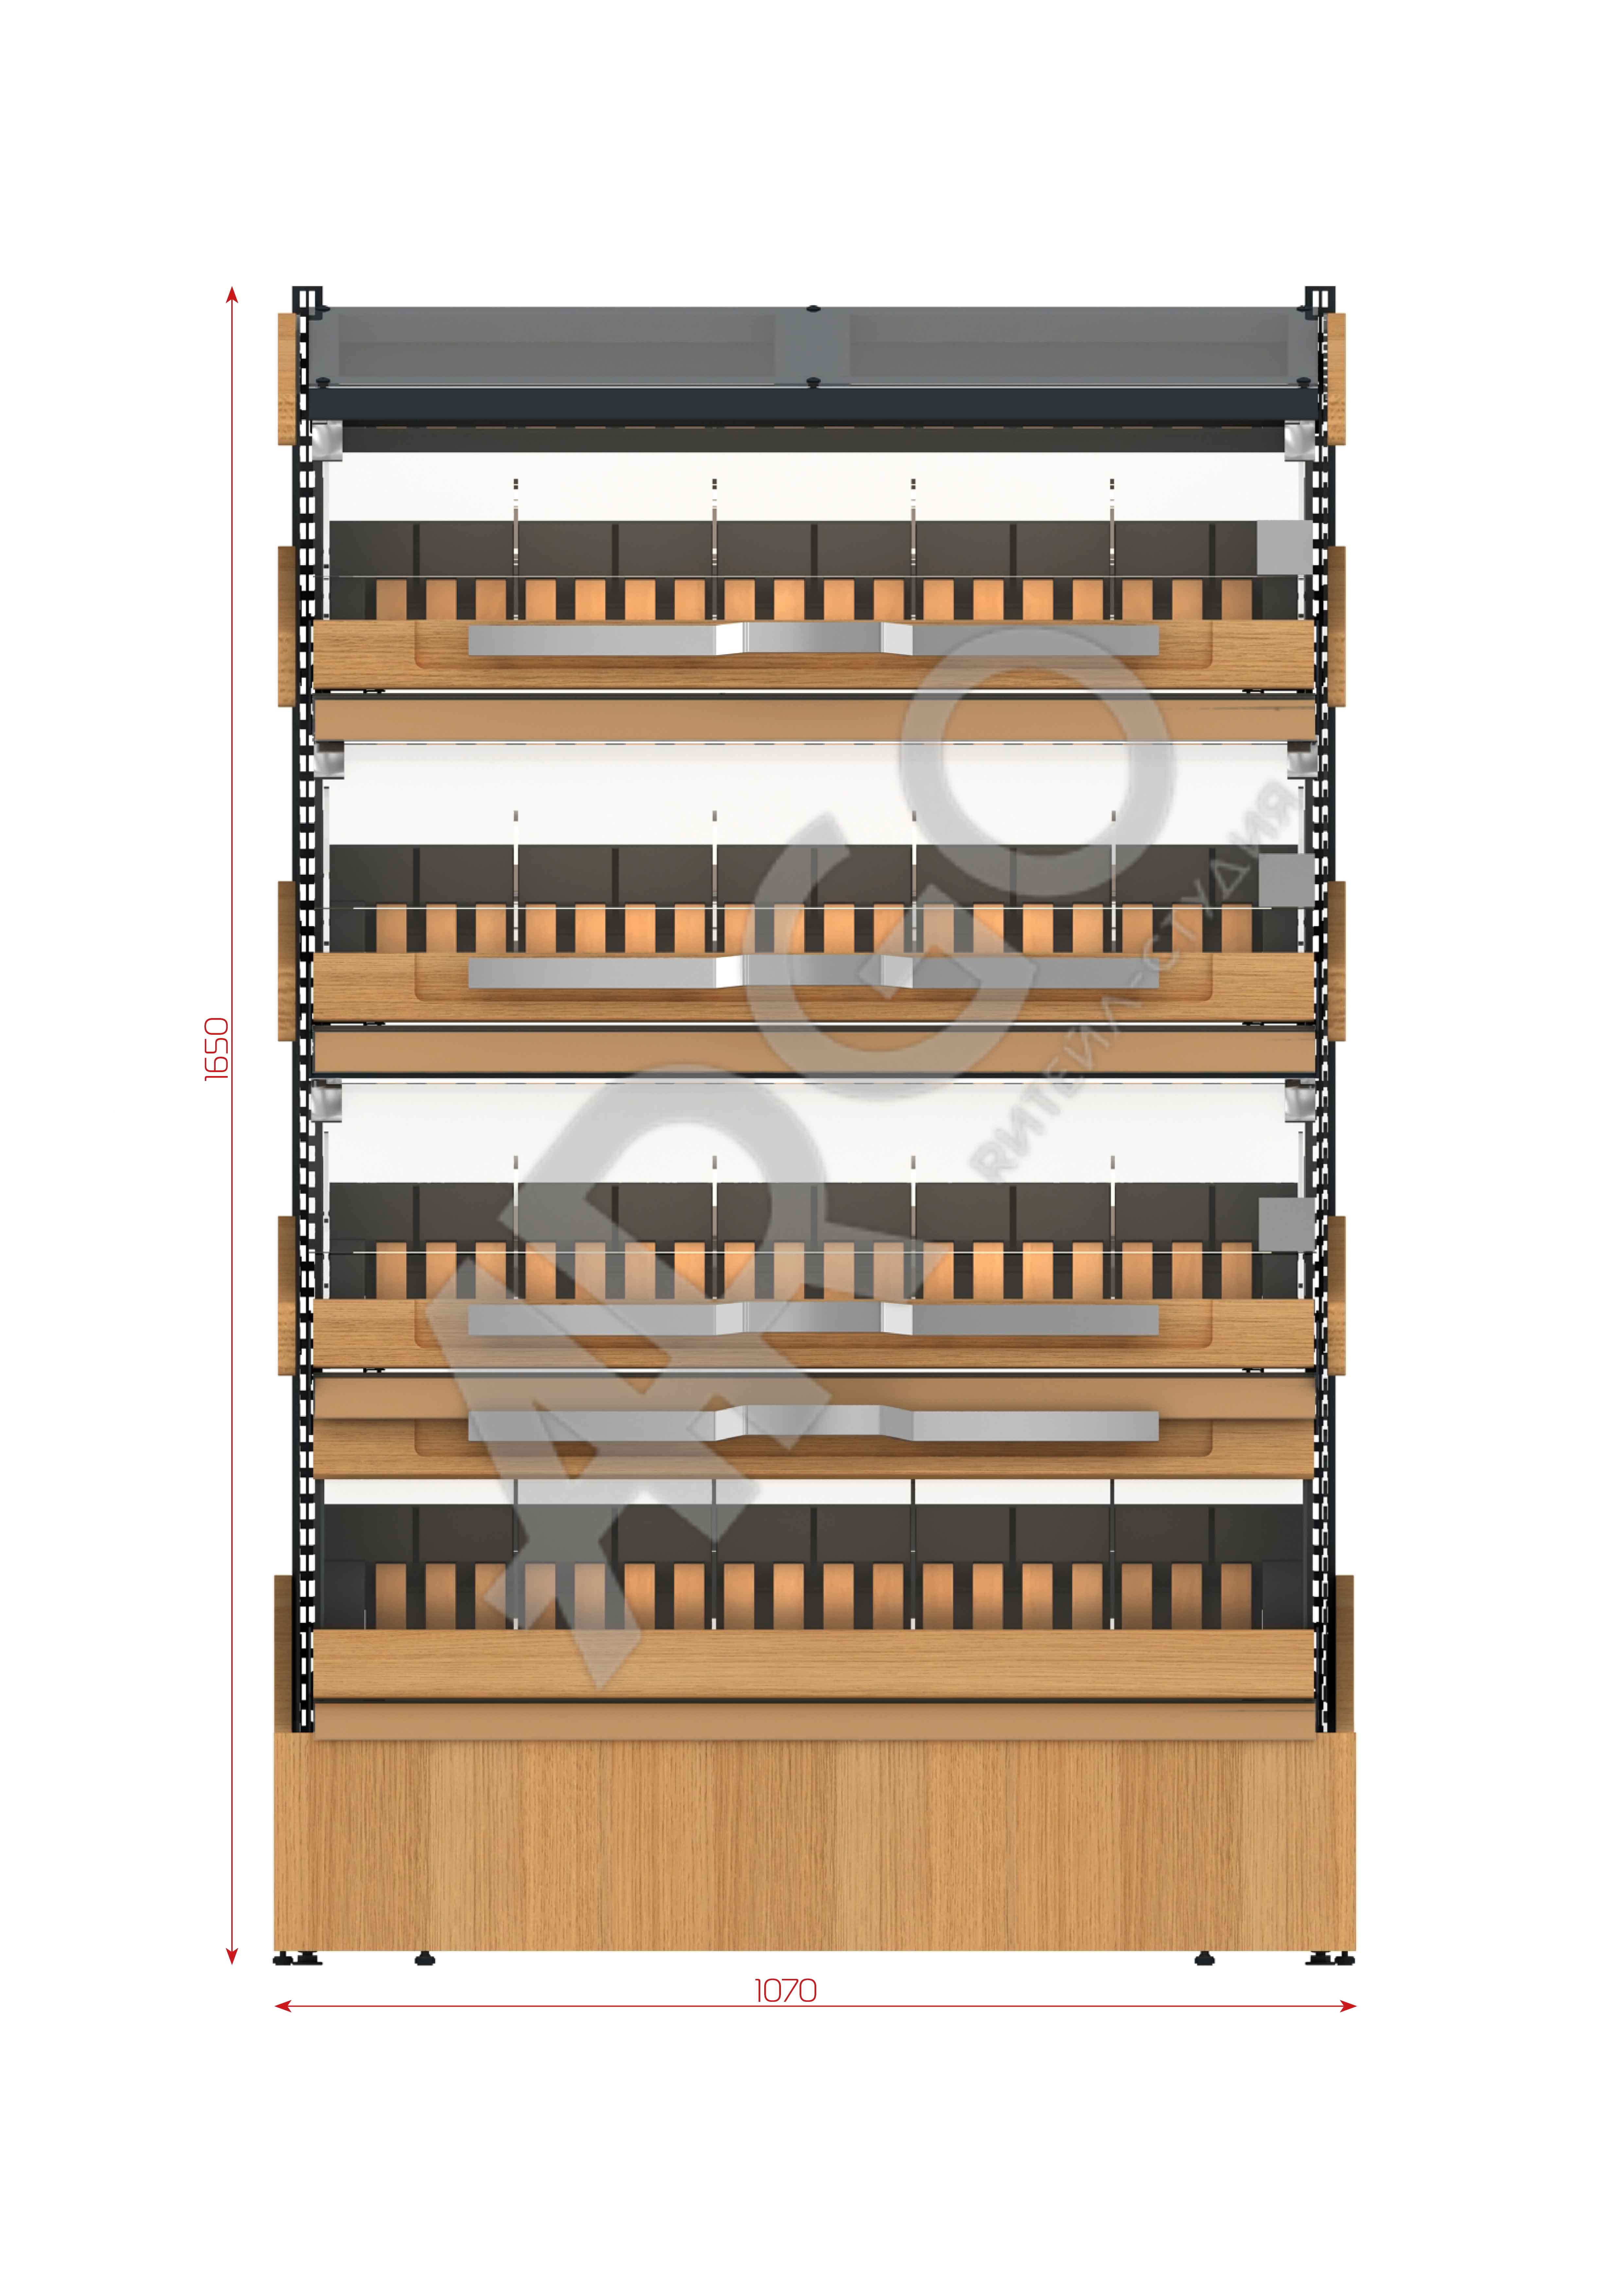 Вместительный хлебный стеллаж с грамотно продуманными габаритами, сделанный из надежных материалов (металлокаркас/лдсп/стекло) – необходимый предмет торговой мебели для демонстрации хлебных изделий